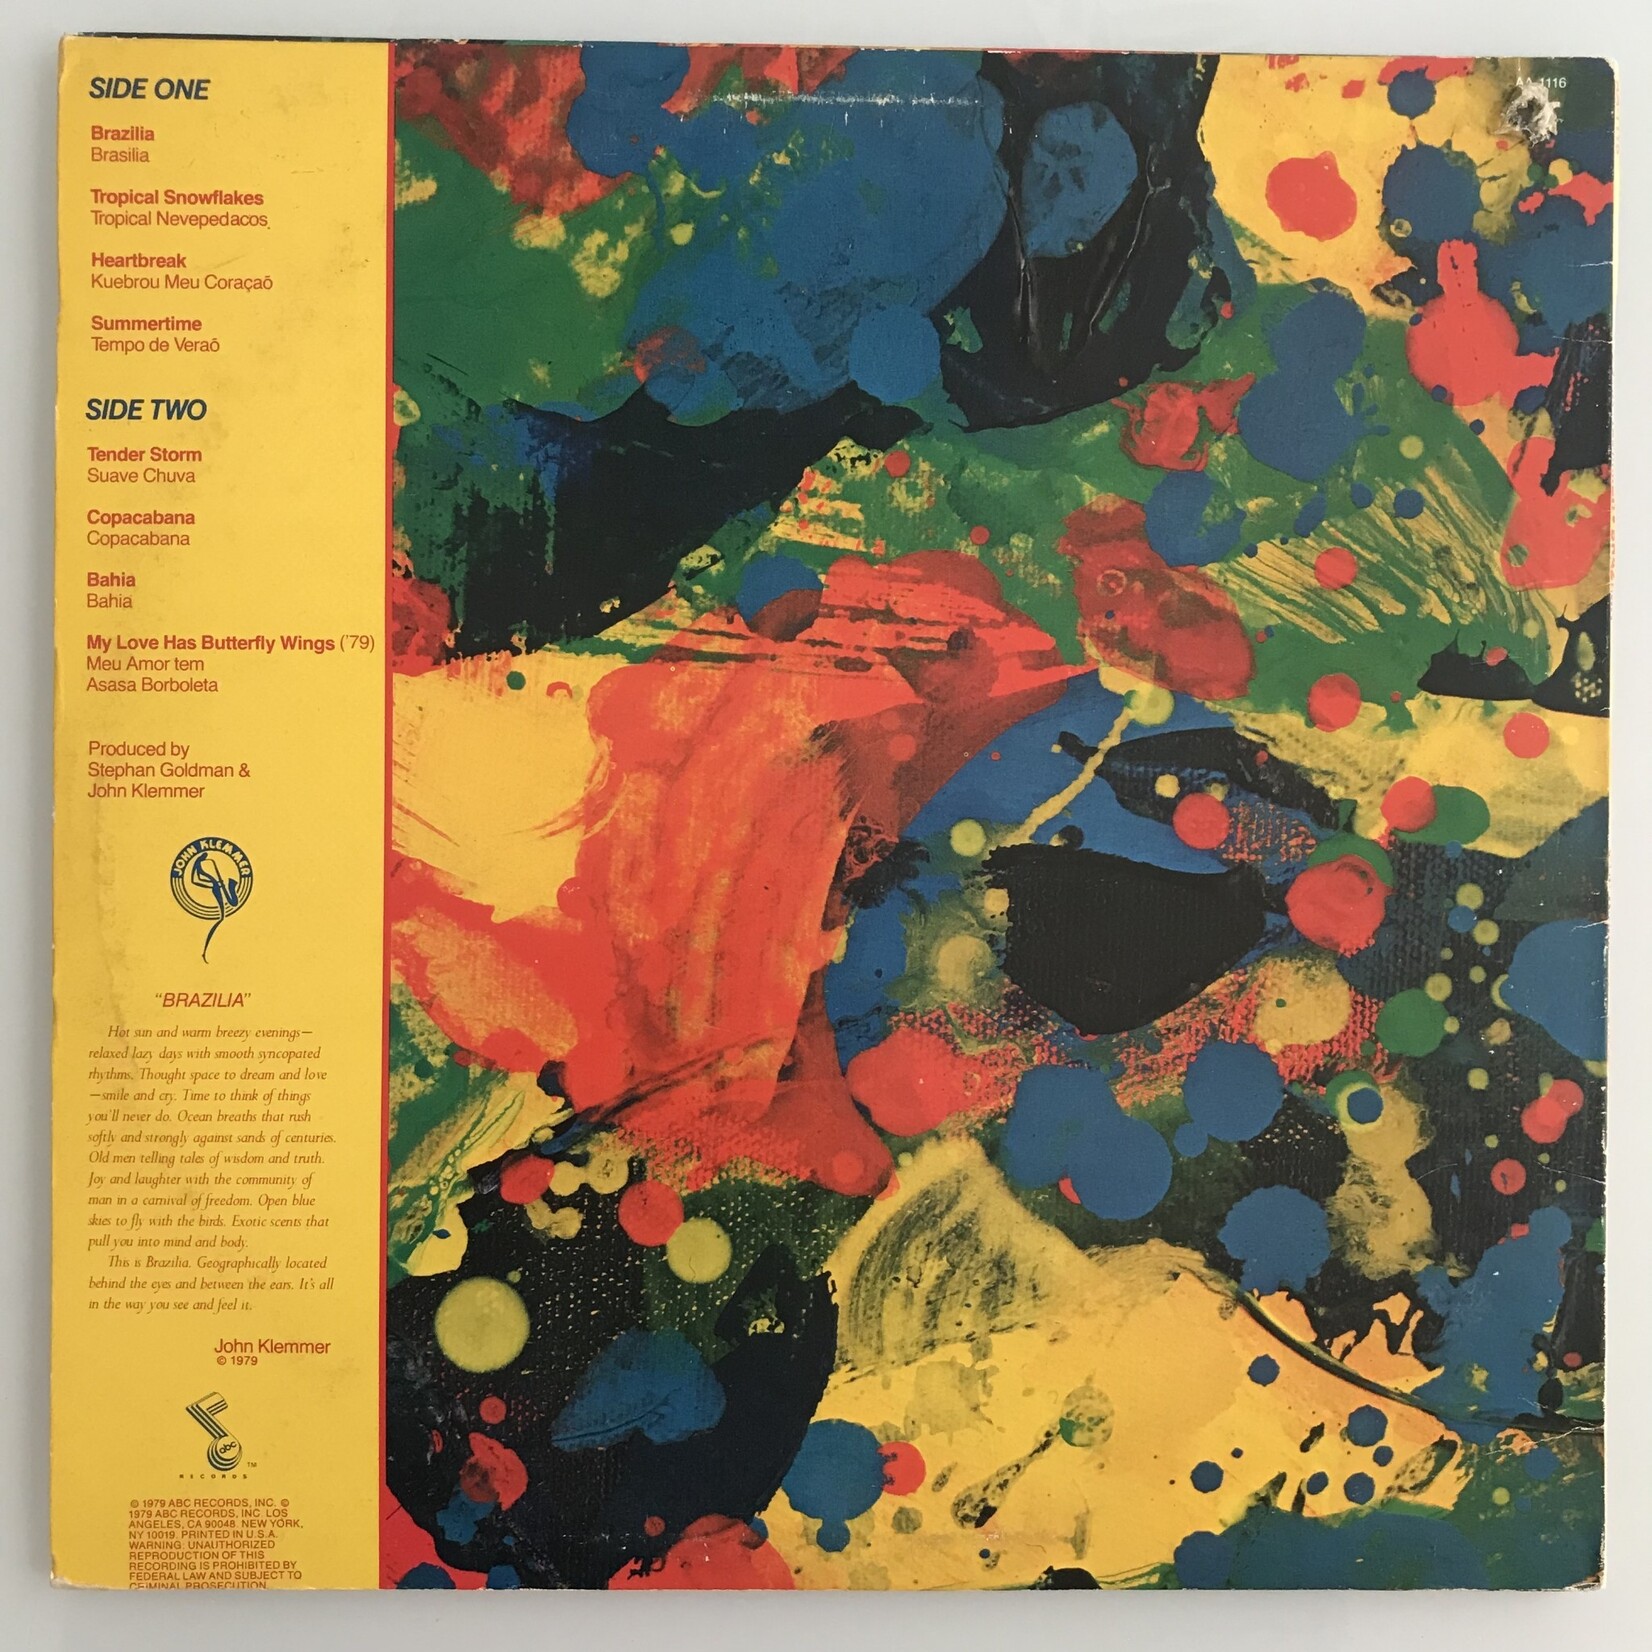 John Klemmer - Brazilia - Vinyl LP (USED)